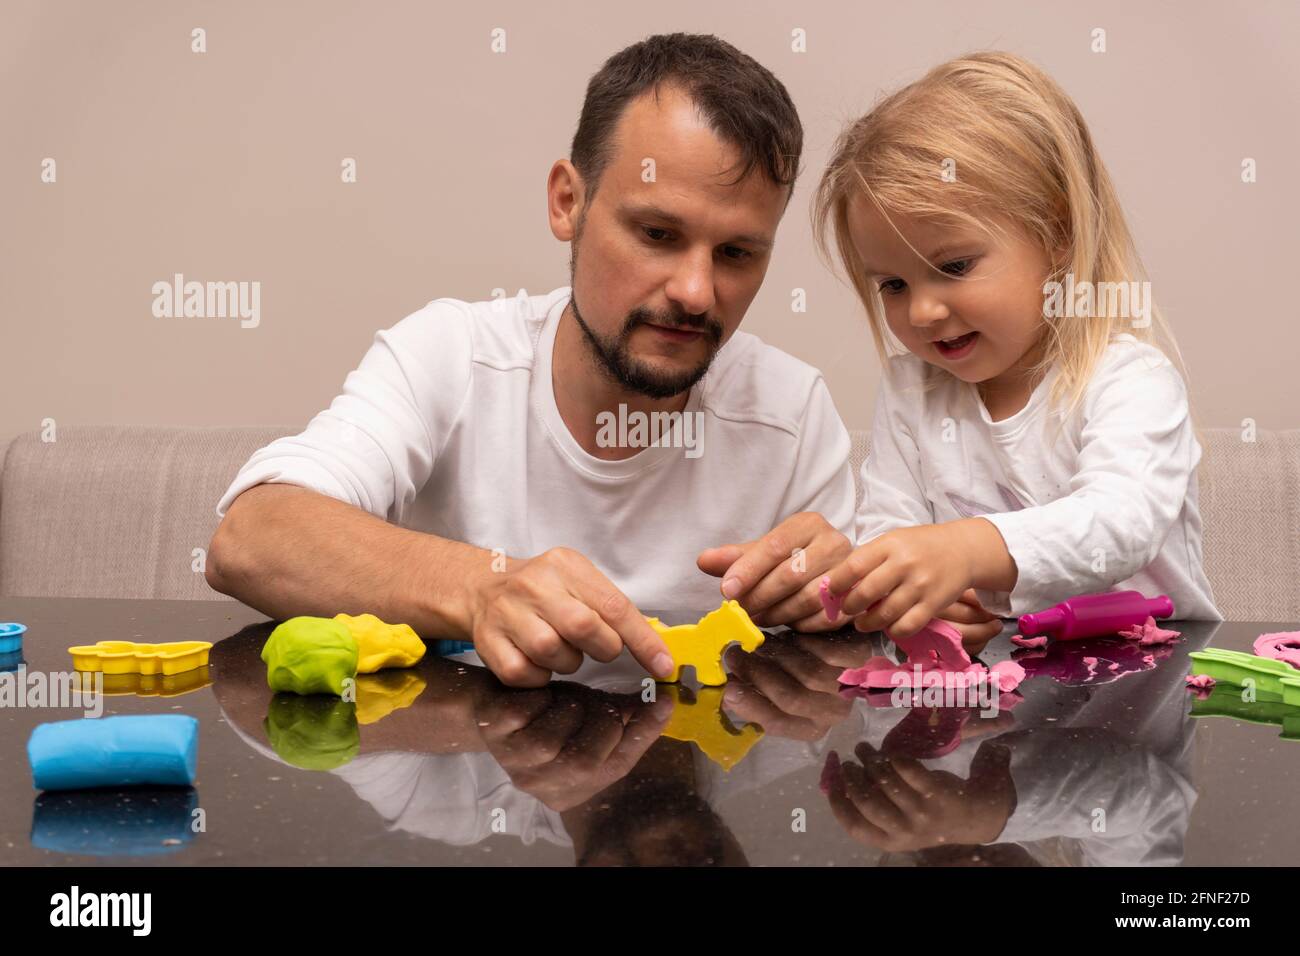 El padre juega con el niño con animales coloridos hechos de masa de juego Foto de stock